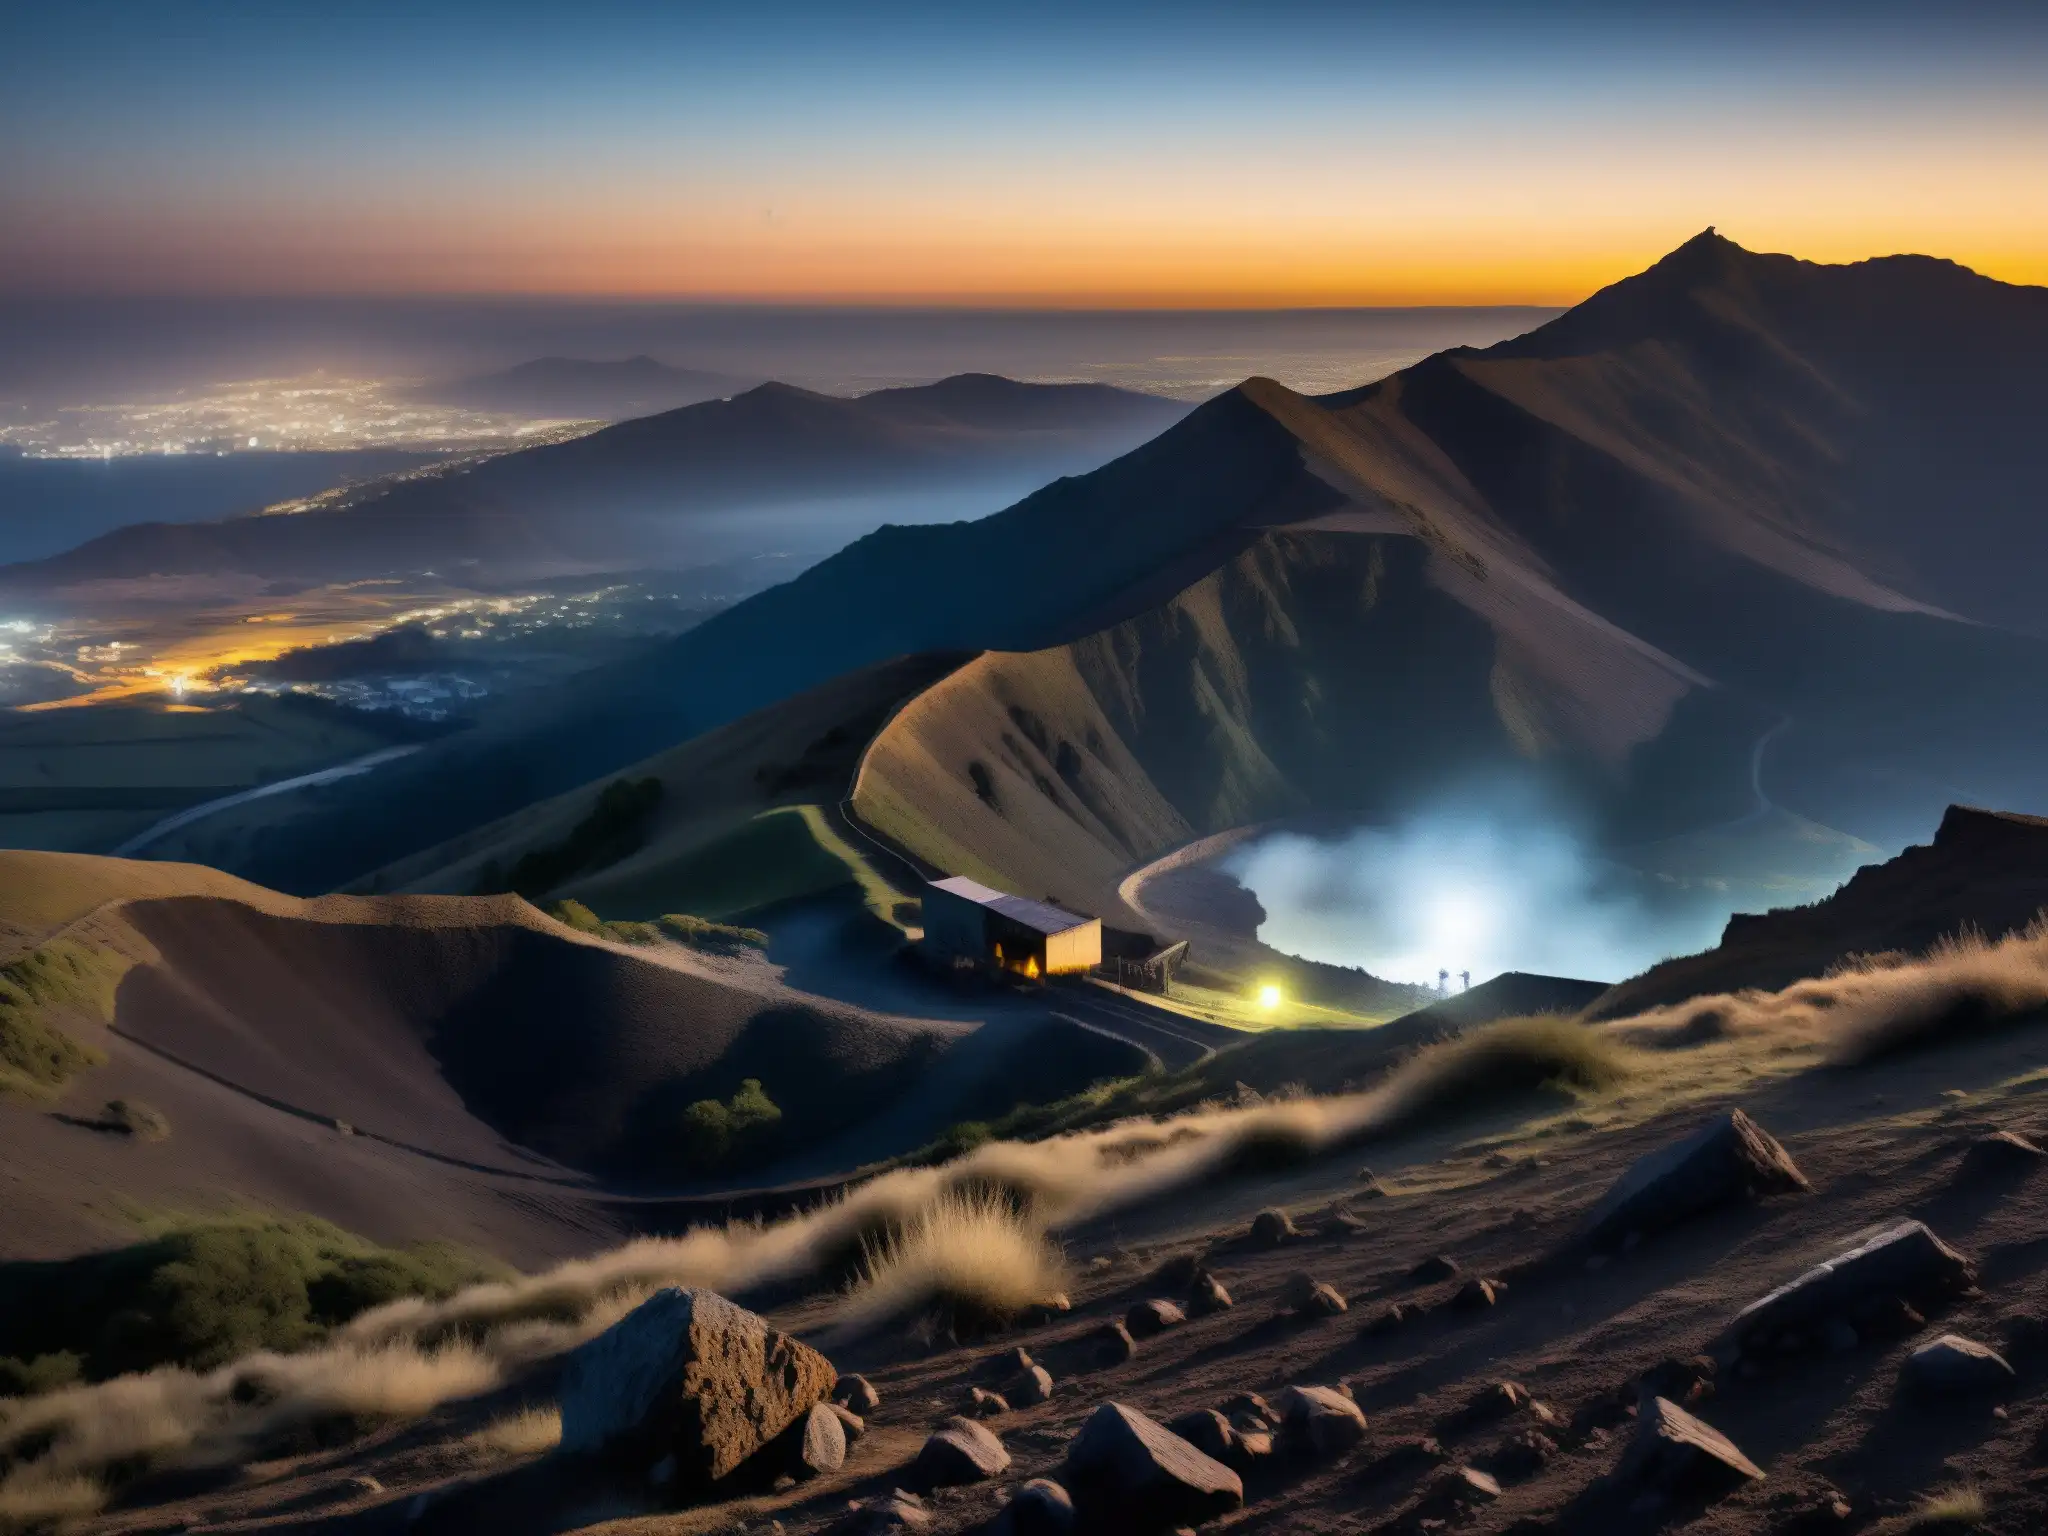 Fantasmal noche de luna en Cerro de la Bufa, con mina abandonada y figura misteriosa, evocando la atmósfera de leyenda